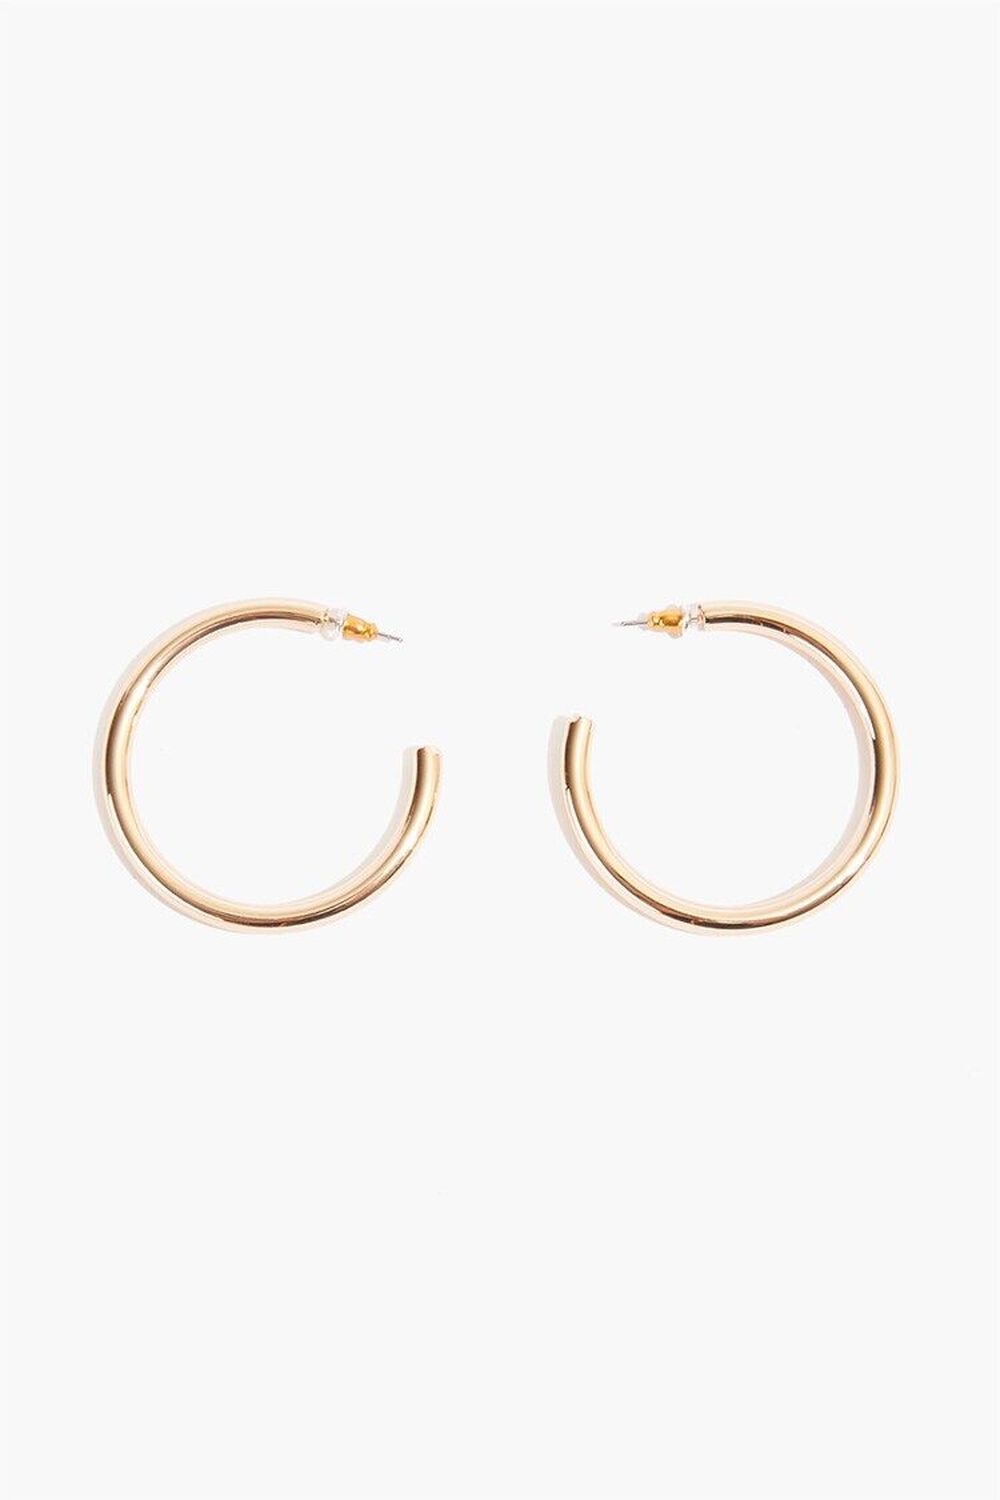 GOLD Tube Hoop Earrings, image 2